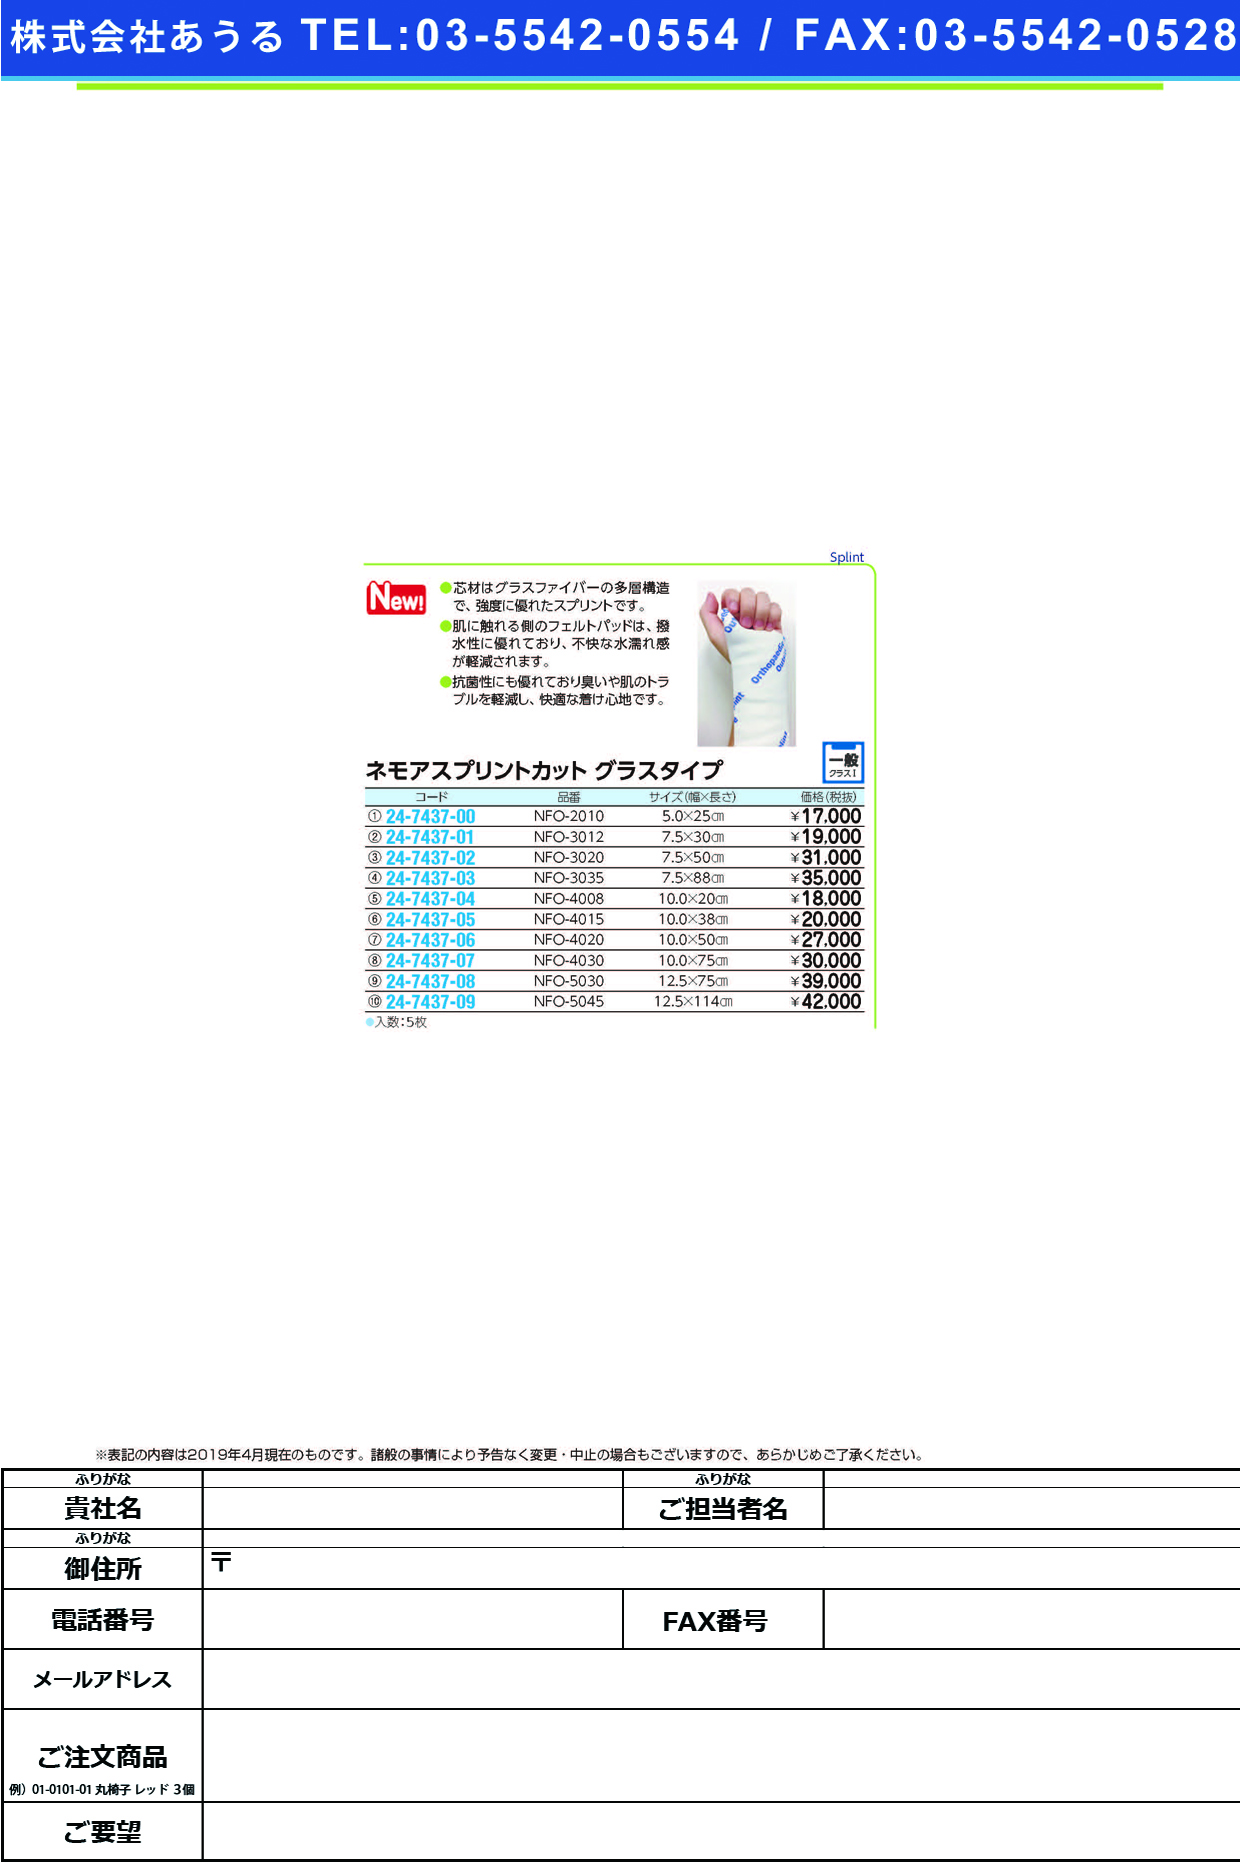 (24-7437-08)ネモアスプリントカット　グラスタイプNFO-5030(12.5X75CM) ﾈﾓｱｽﾌﾟﾘﾝﾄｶｯﾄｸﾞﾗｽﾀｲﾌﾟ(日本ハイテック)【1箱単位】【2019年カタログ商品】